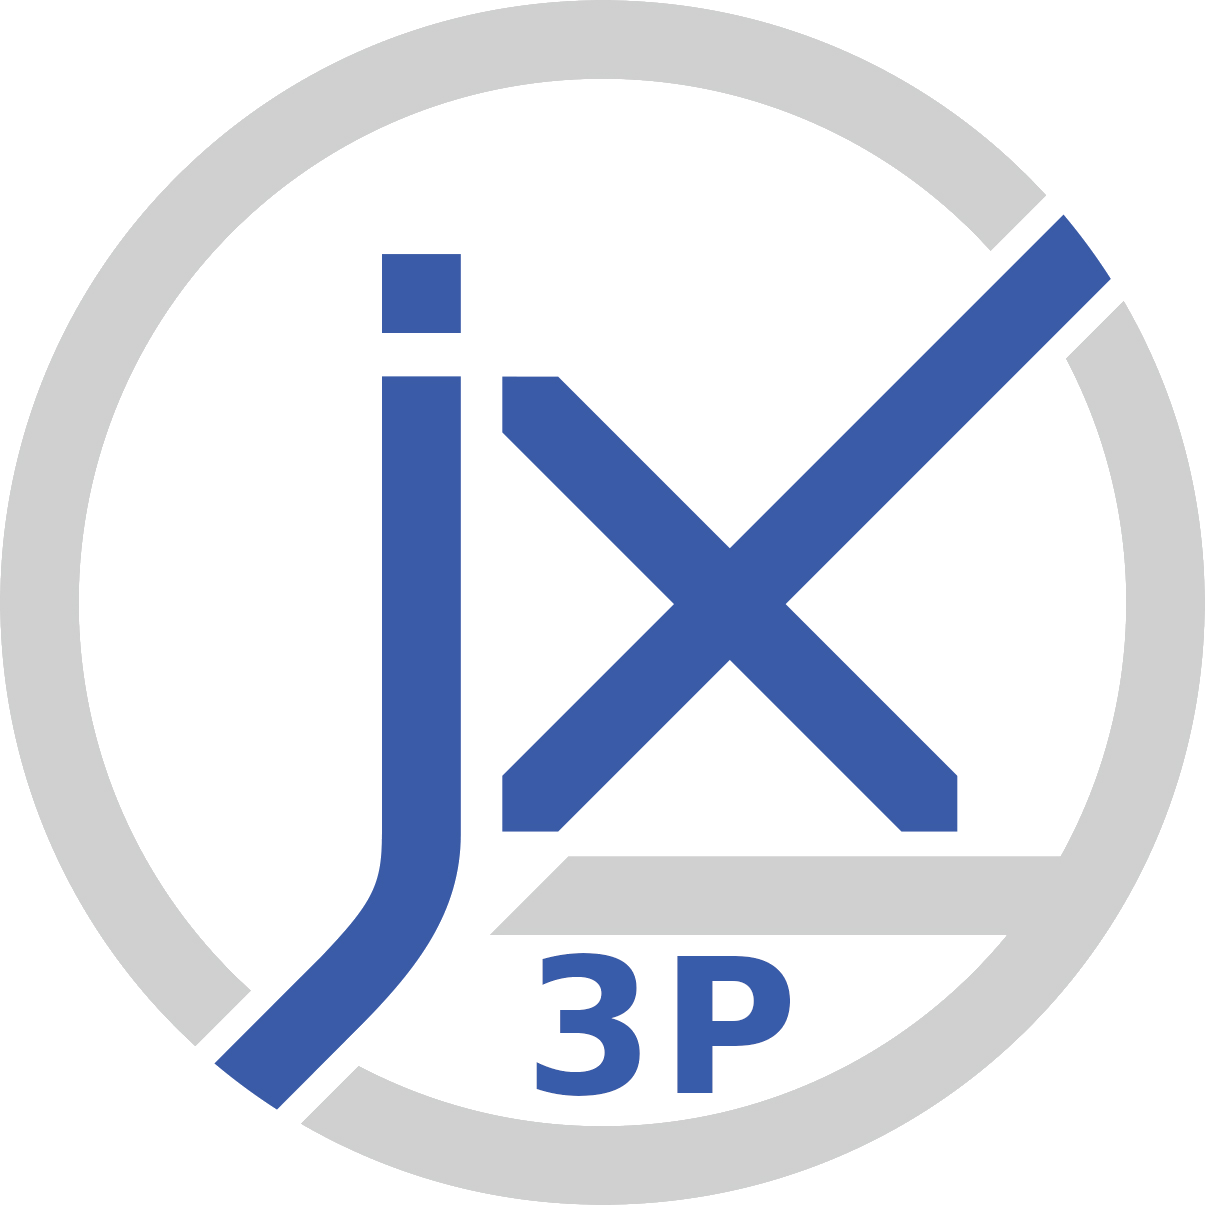 JX3P - Services